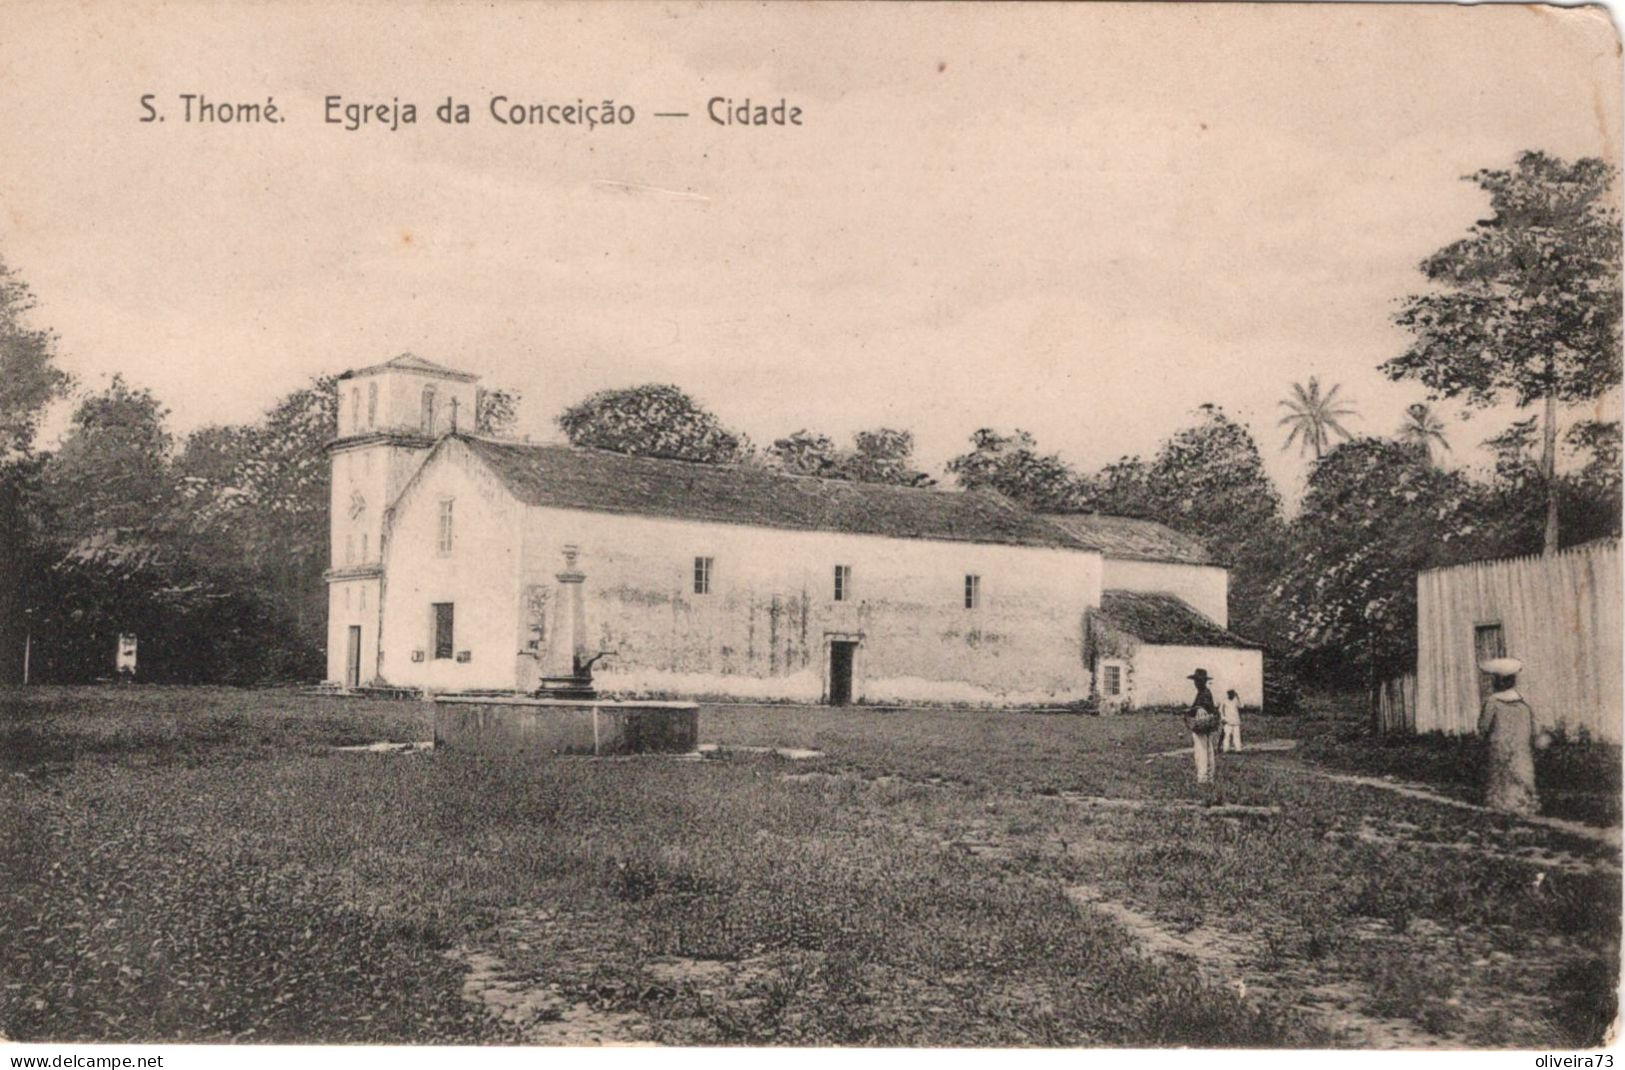 SÃO TOME E PRINCIPE - S. THOMÉ - Igreja Da Conceição - Cidade - Sao Tome And Principe